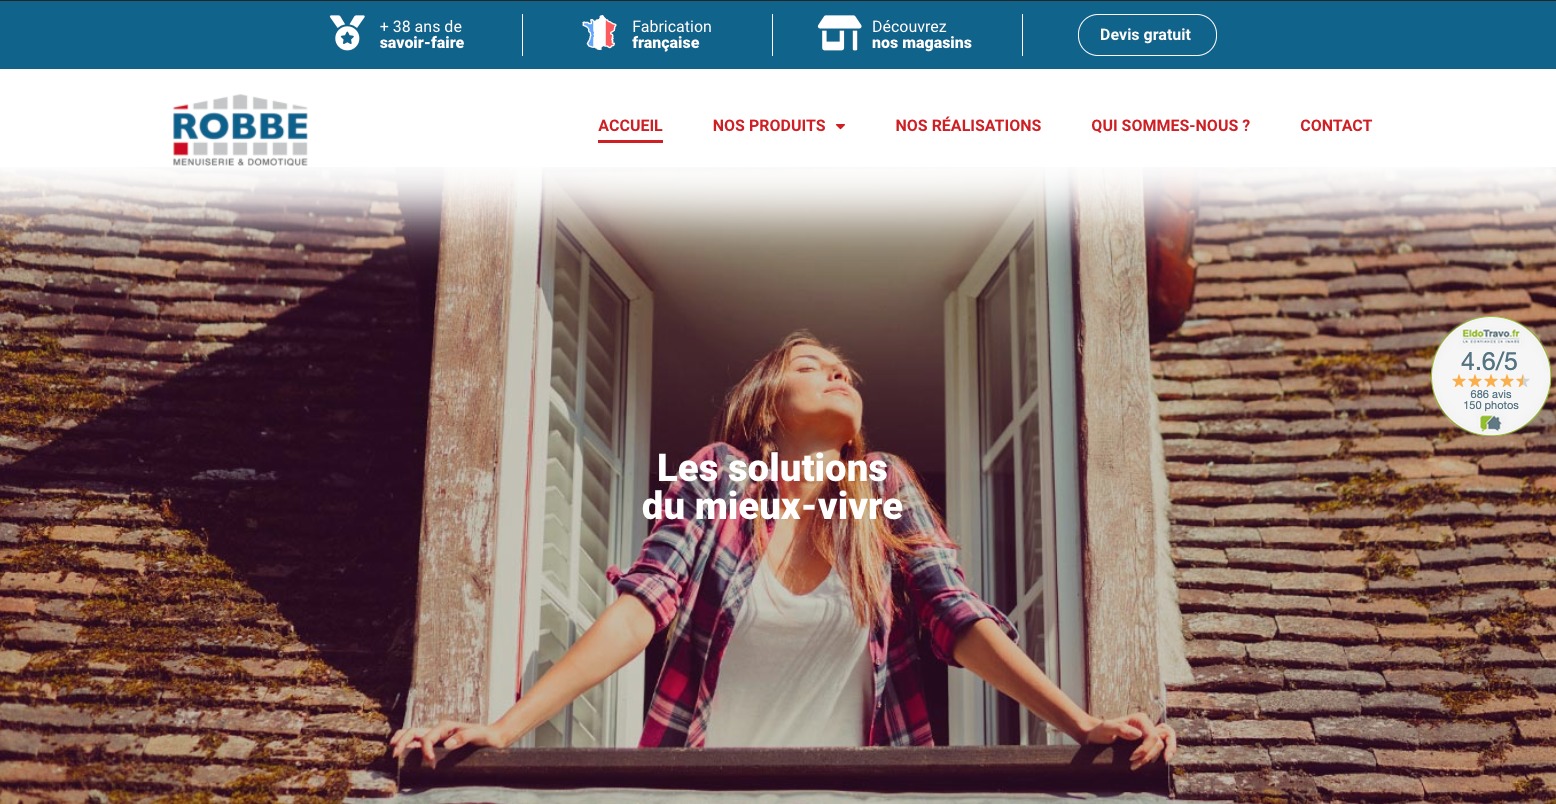 Premiers projets, premiers succès pour NewsMaster France